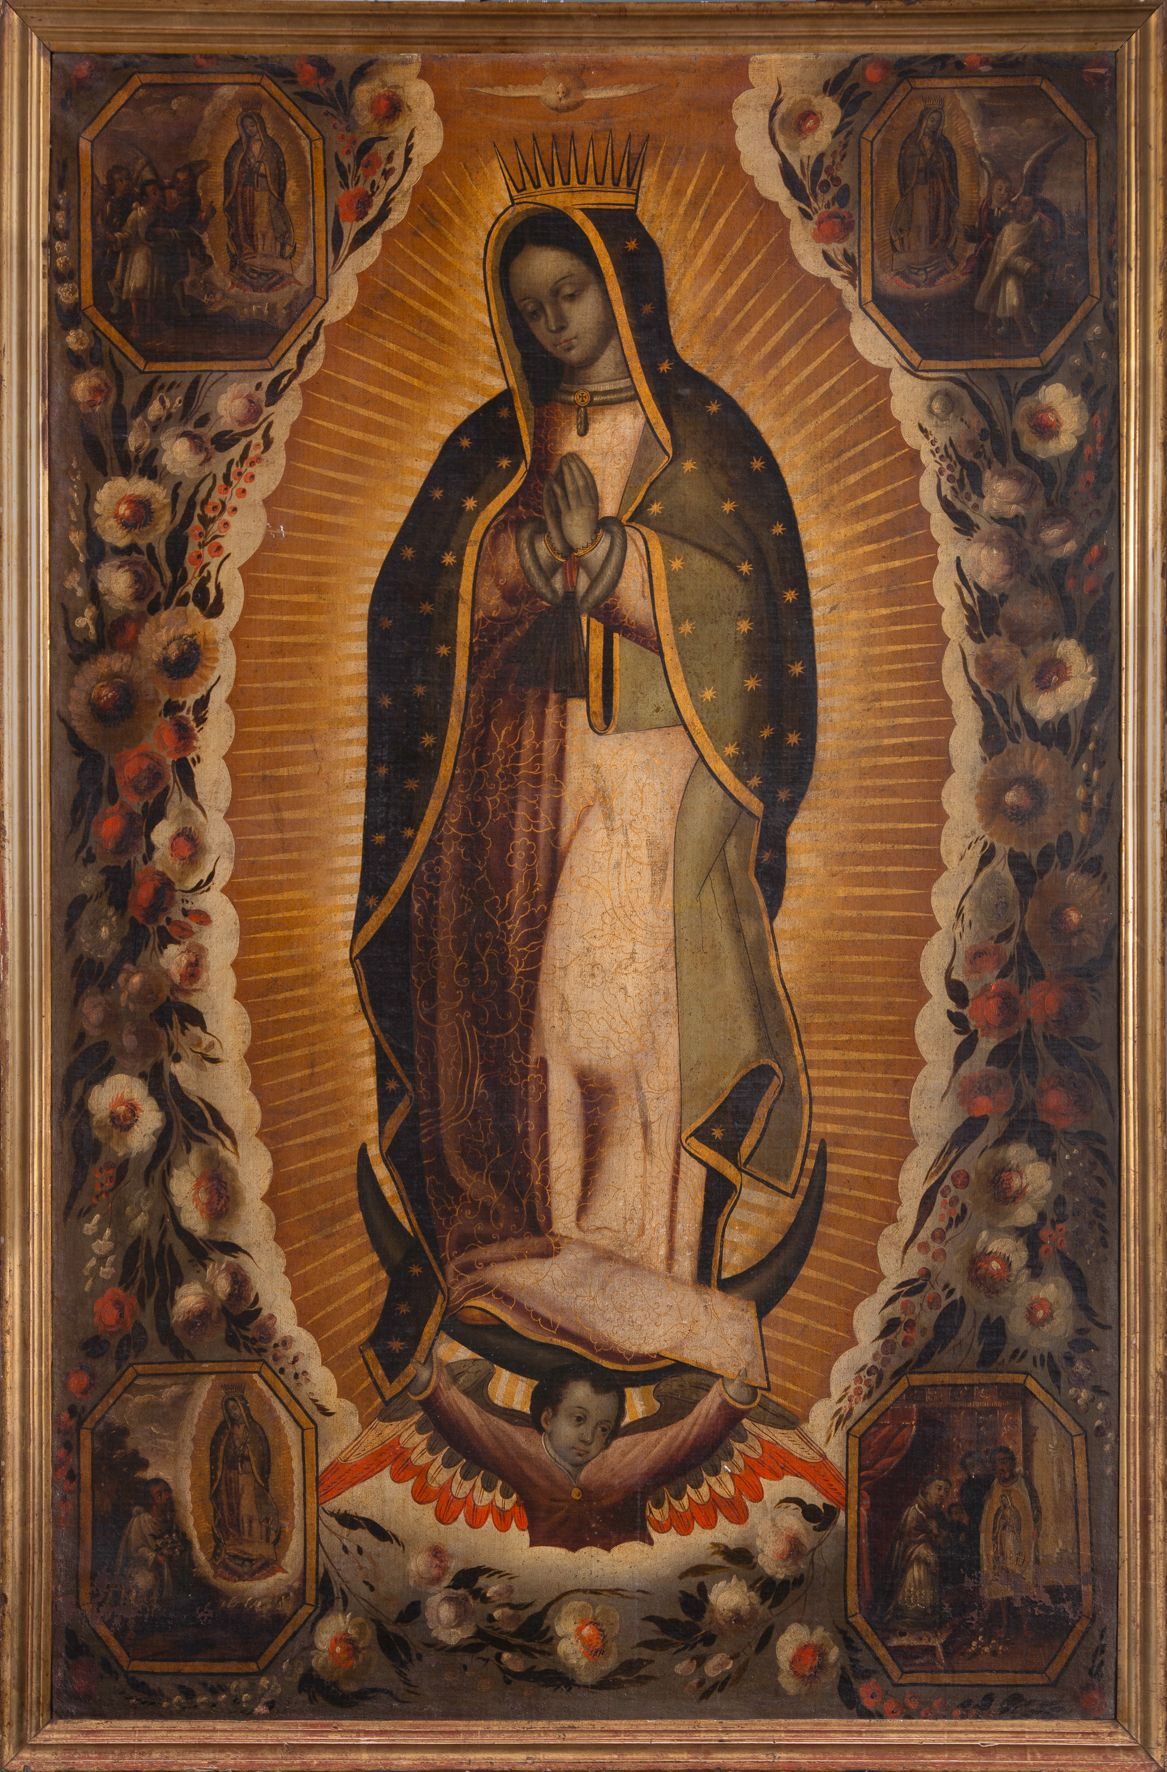 Atribuida a Manuel de Arellano, Virgen de Guadalupe con escenas de la aparición al indio Juan Diego, después de 1691. Salida: 22.000 euros. Remate: 25.000 euros